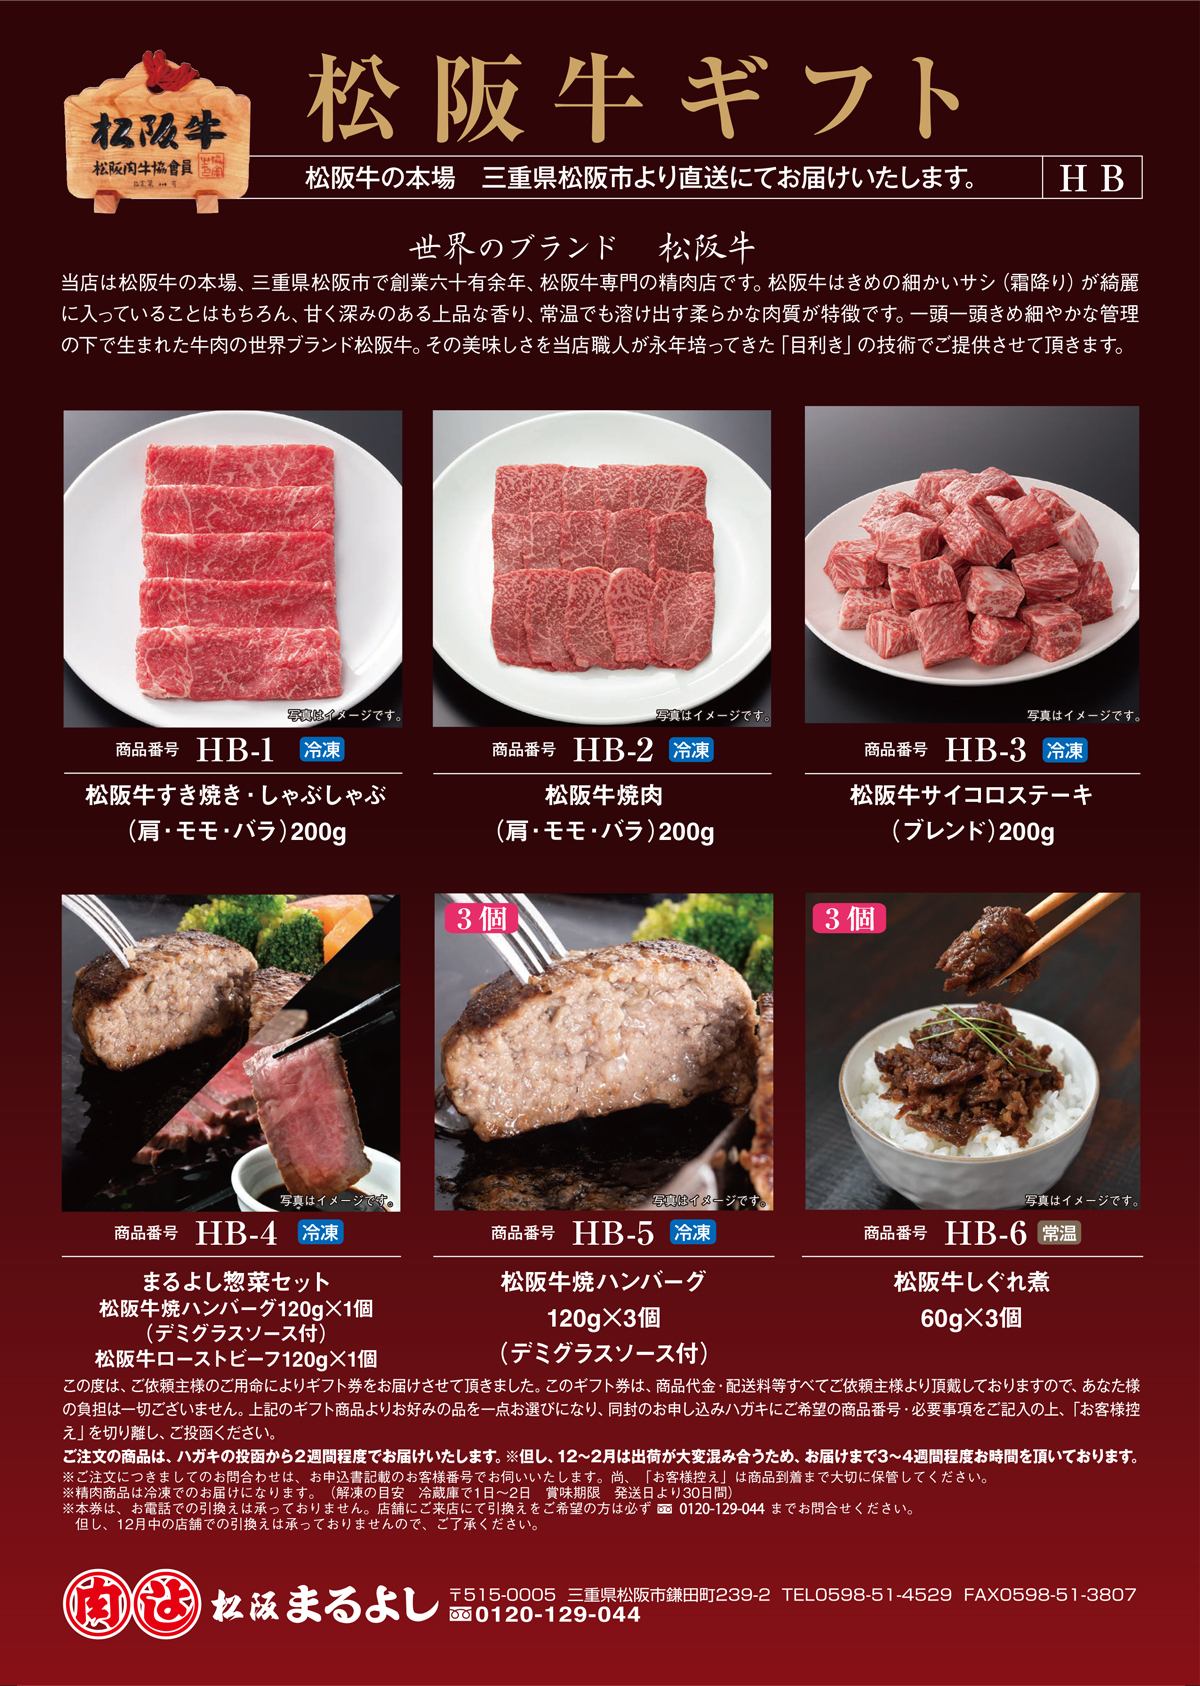 松阪牛 カタログギフト HBタイプ 6500円 お肉 牛肉 肉 ギフト券 ギフト